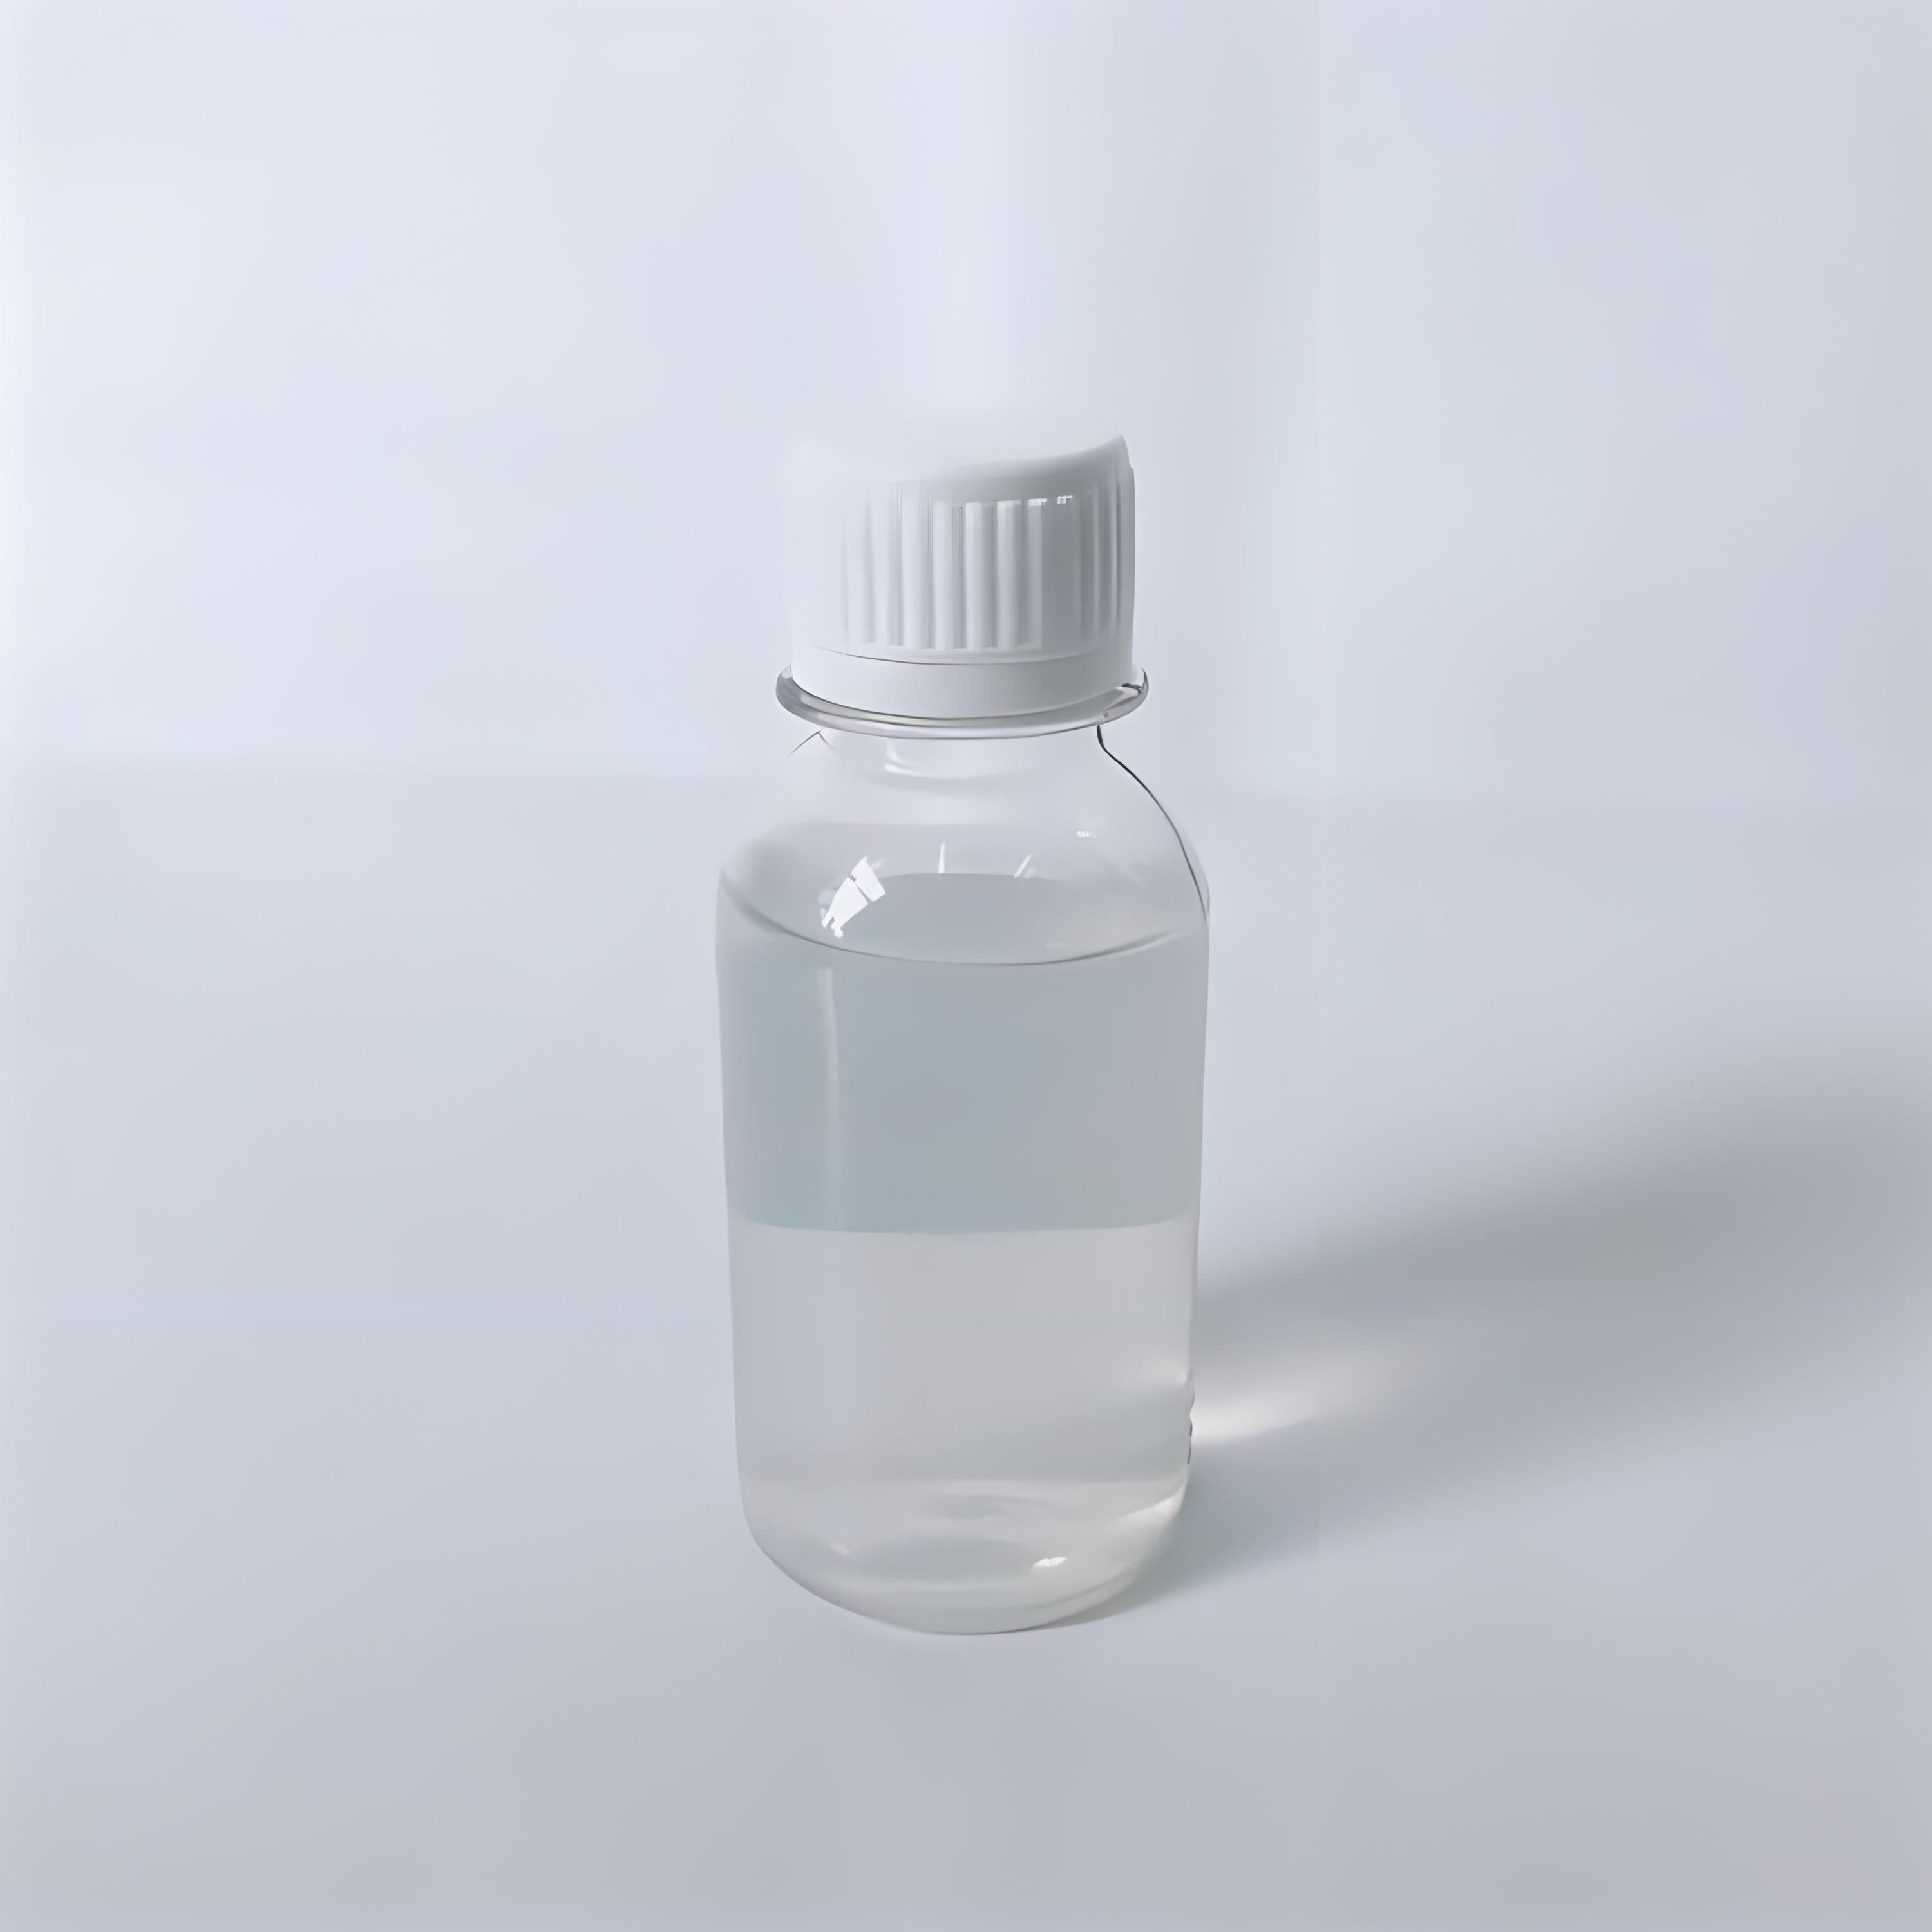 改性纳米二氧化硅乳液